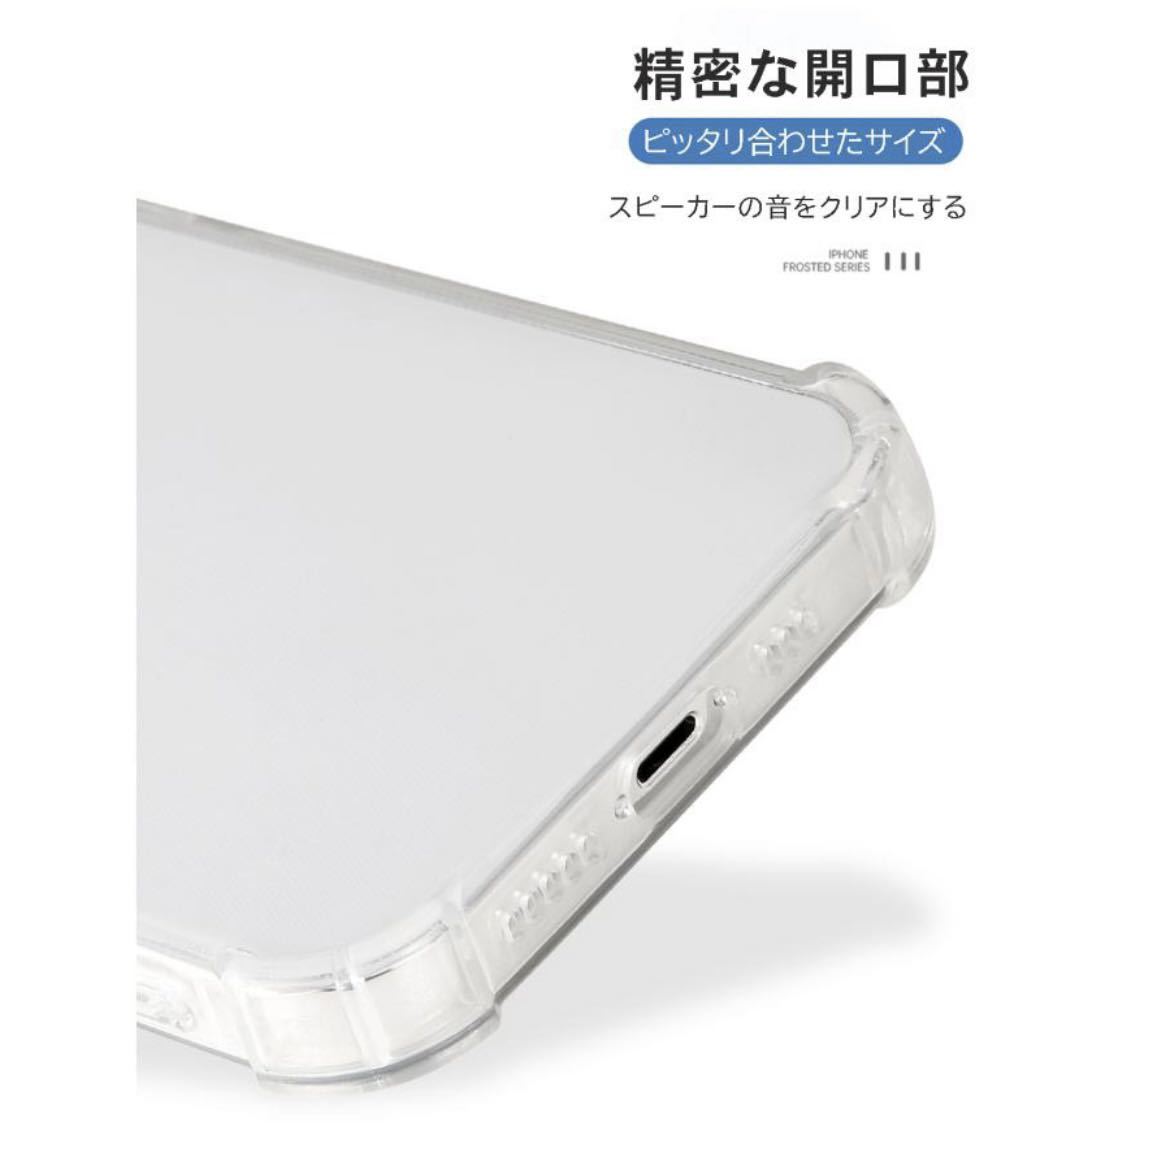 IPhone12 Pro Maxケース アイホン12プロマックスケース Allクリア 耐衝撃_画像6